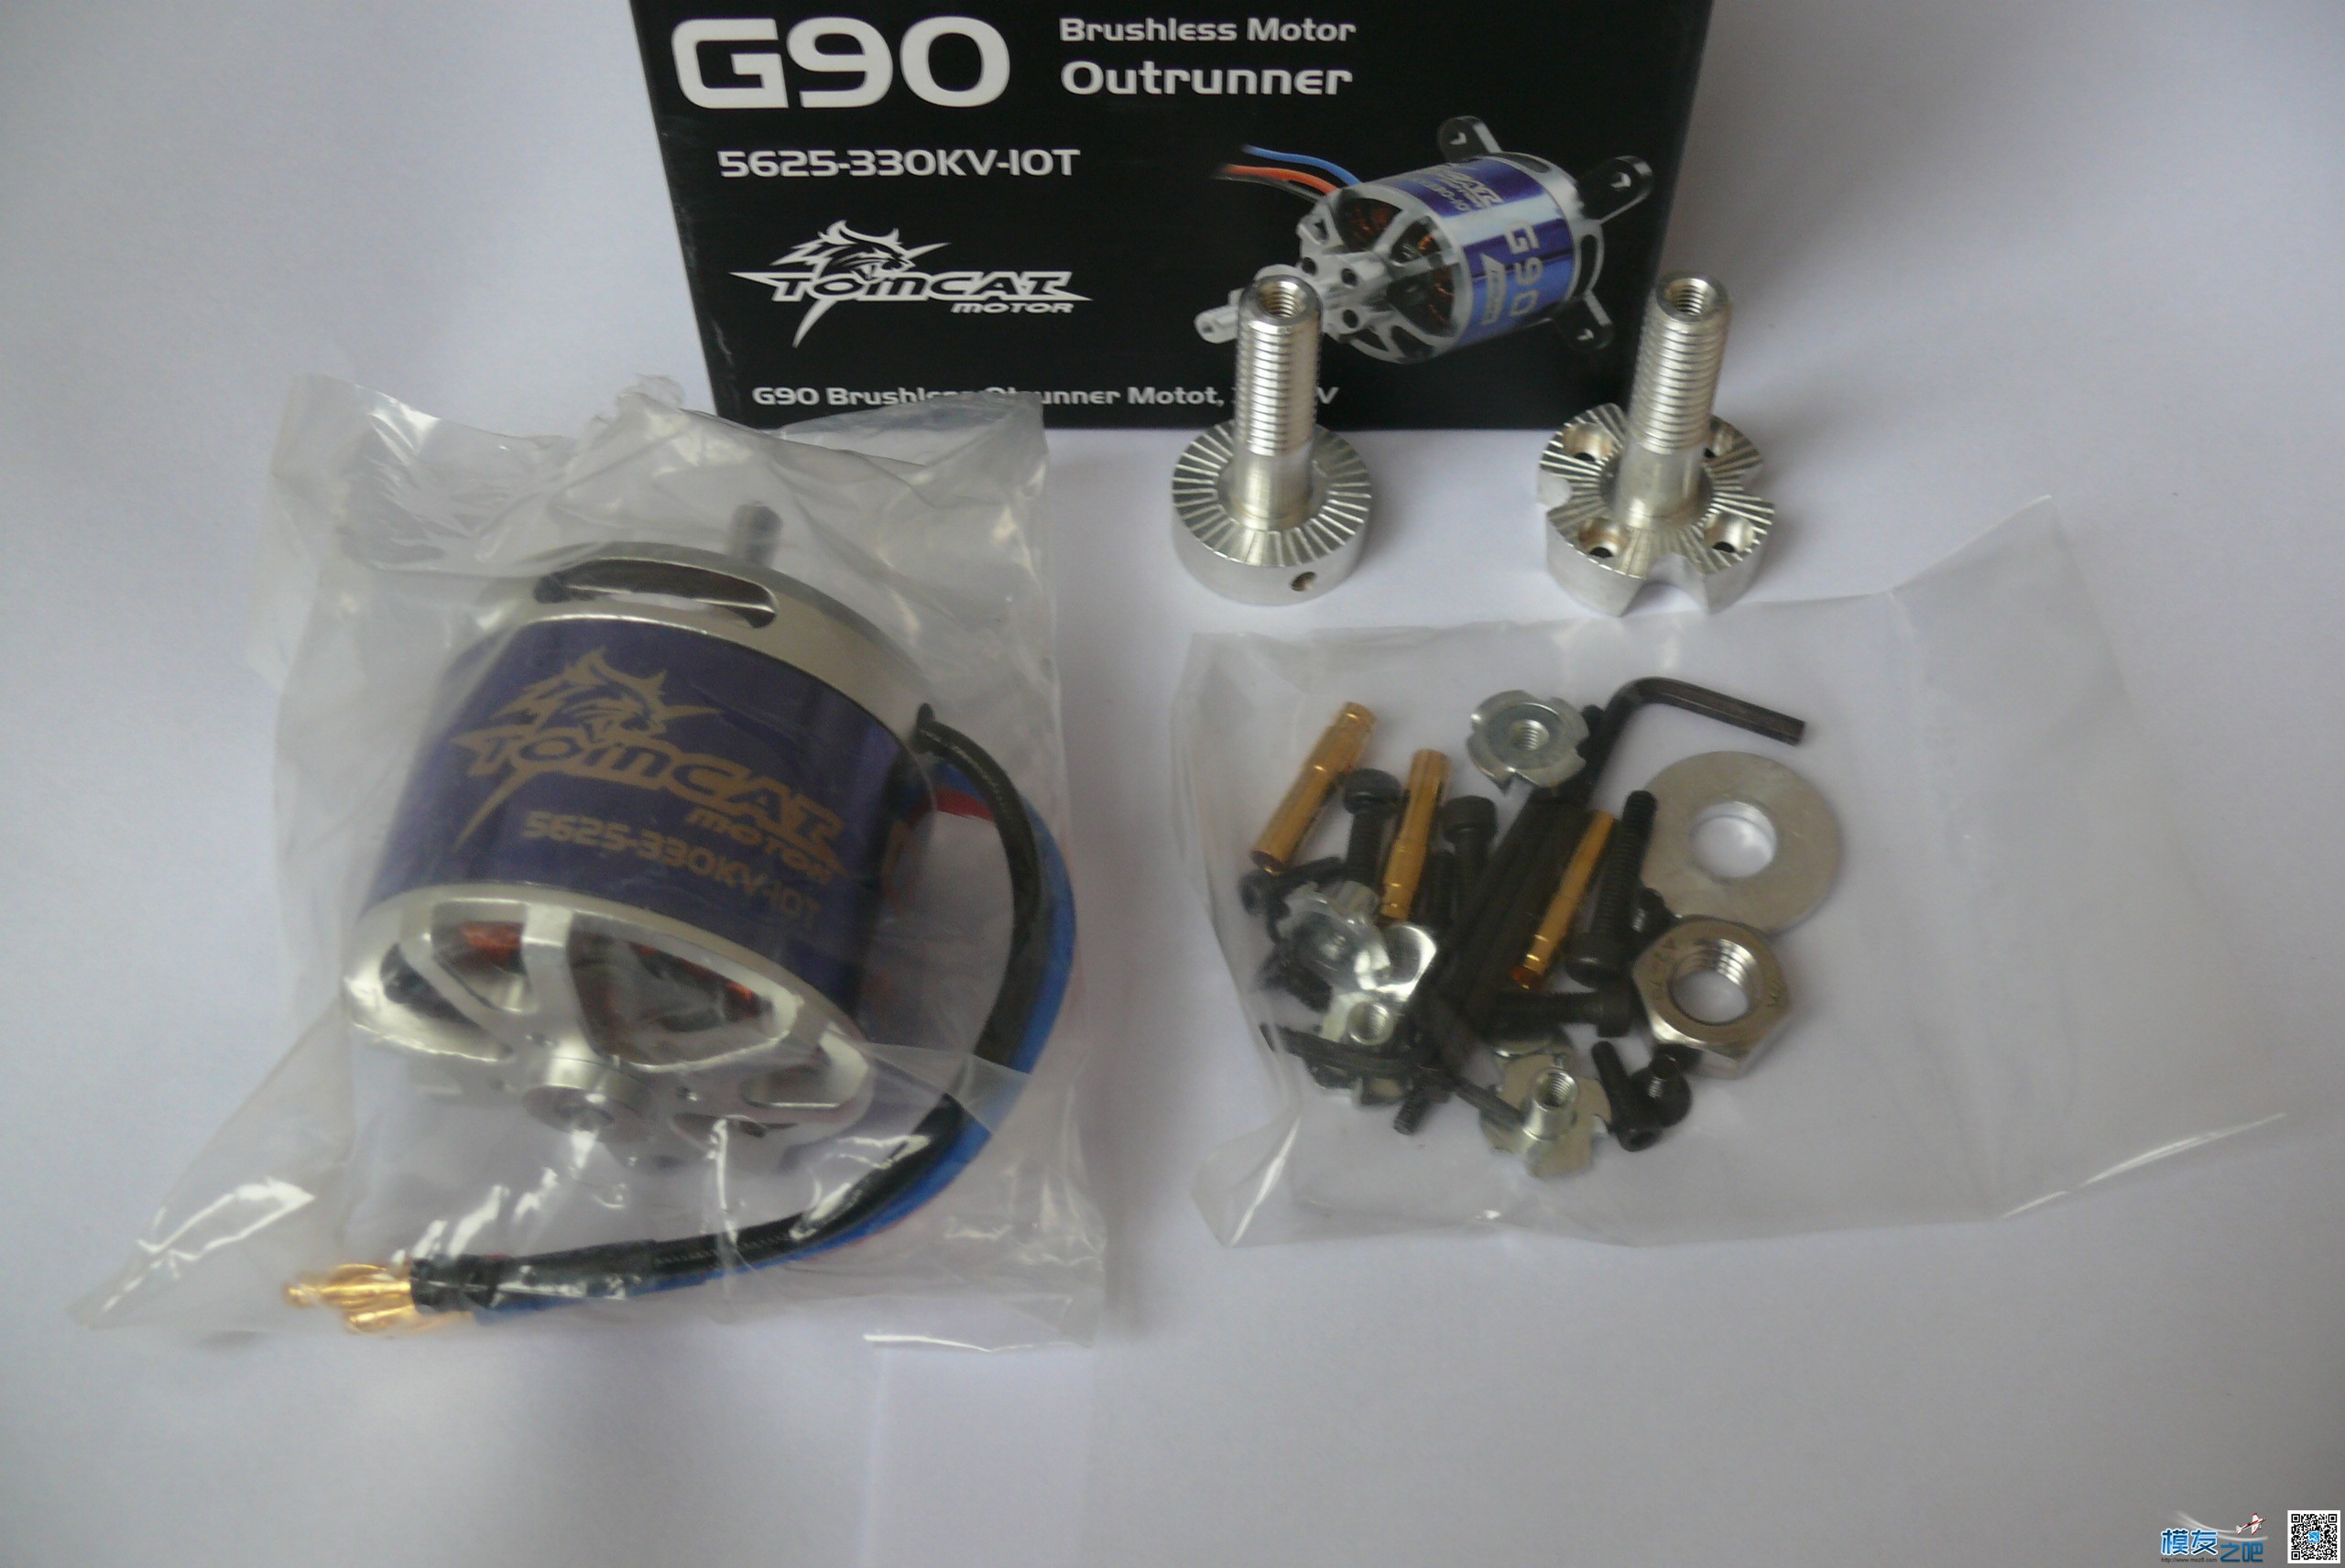 上几张 产品图 G32 和 G90 电机,油动 作者:TomcatMotor 3541 